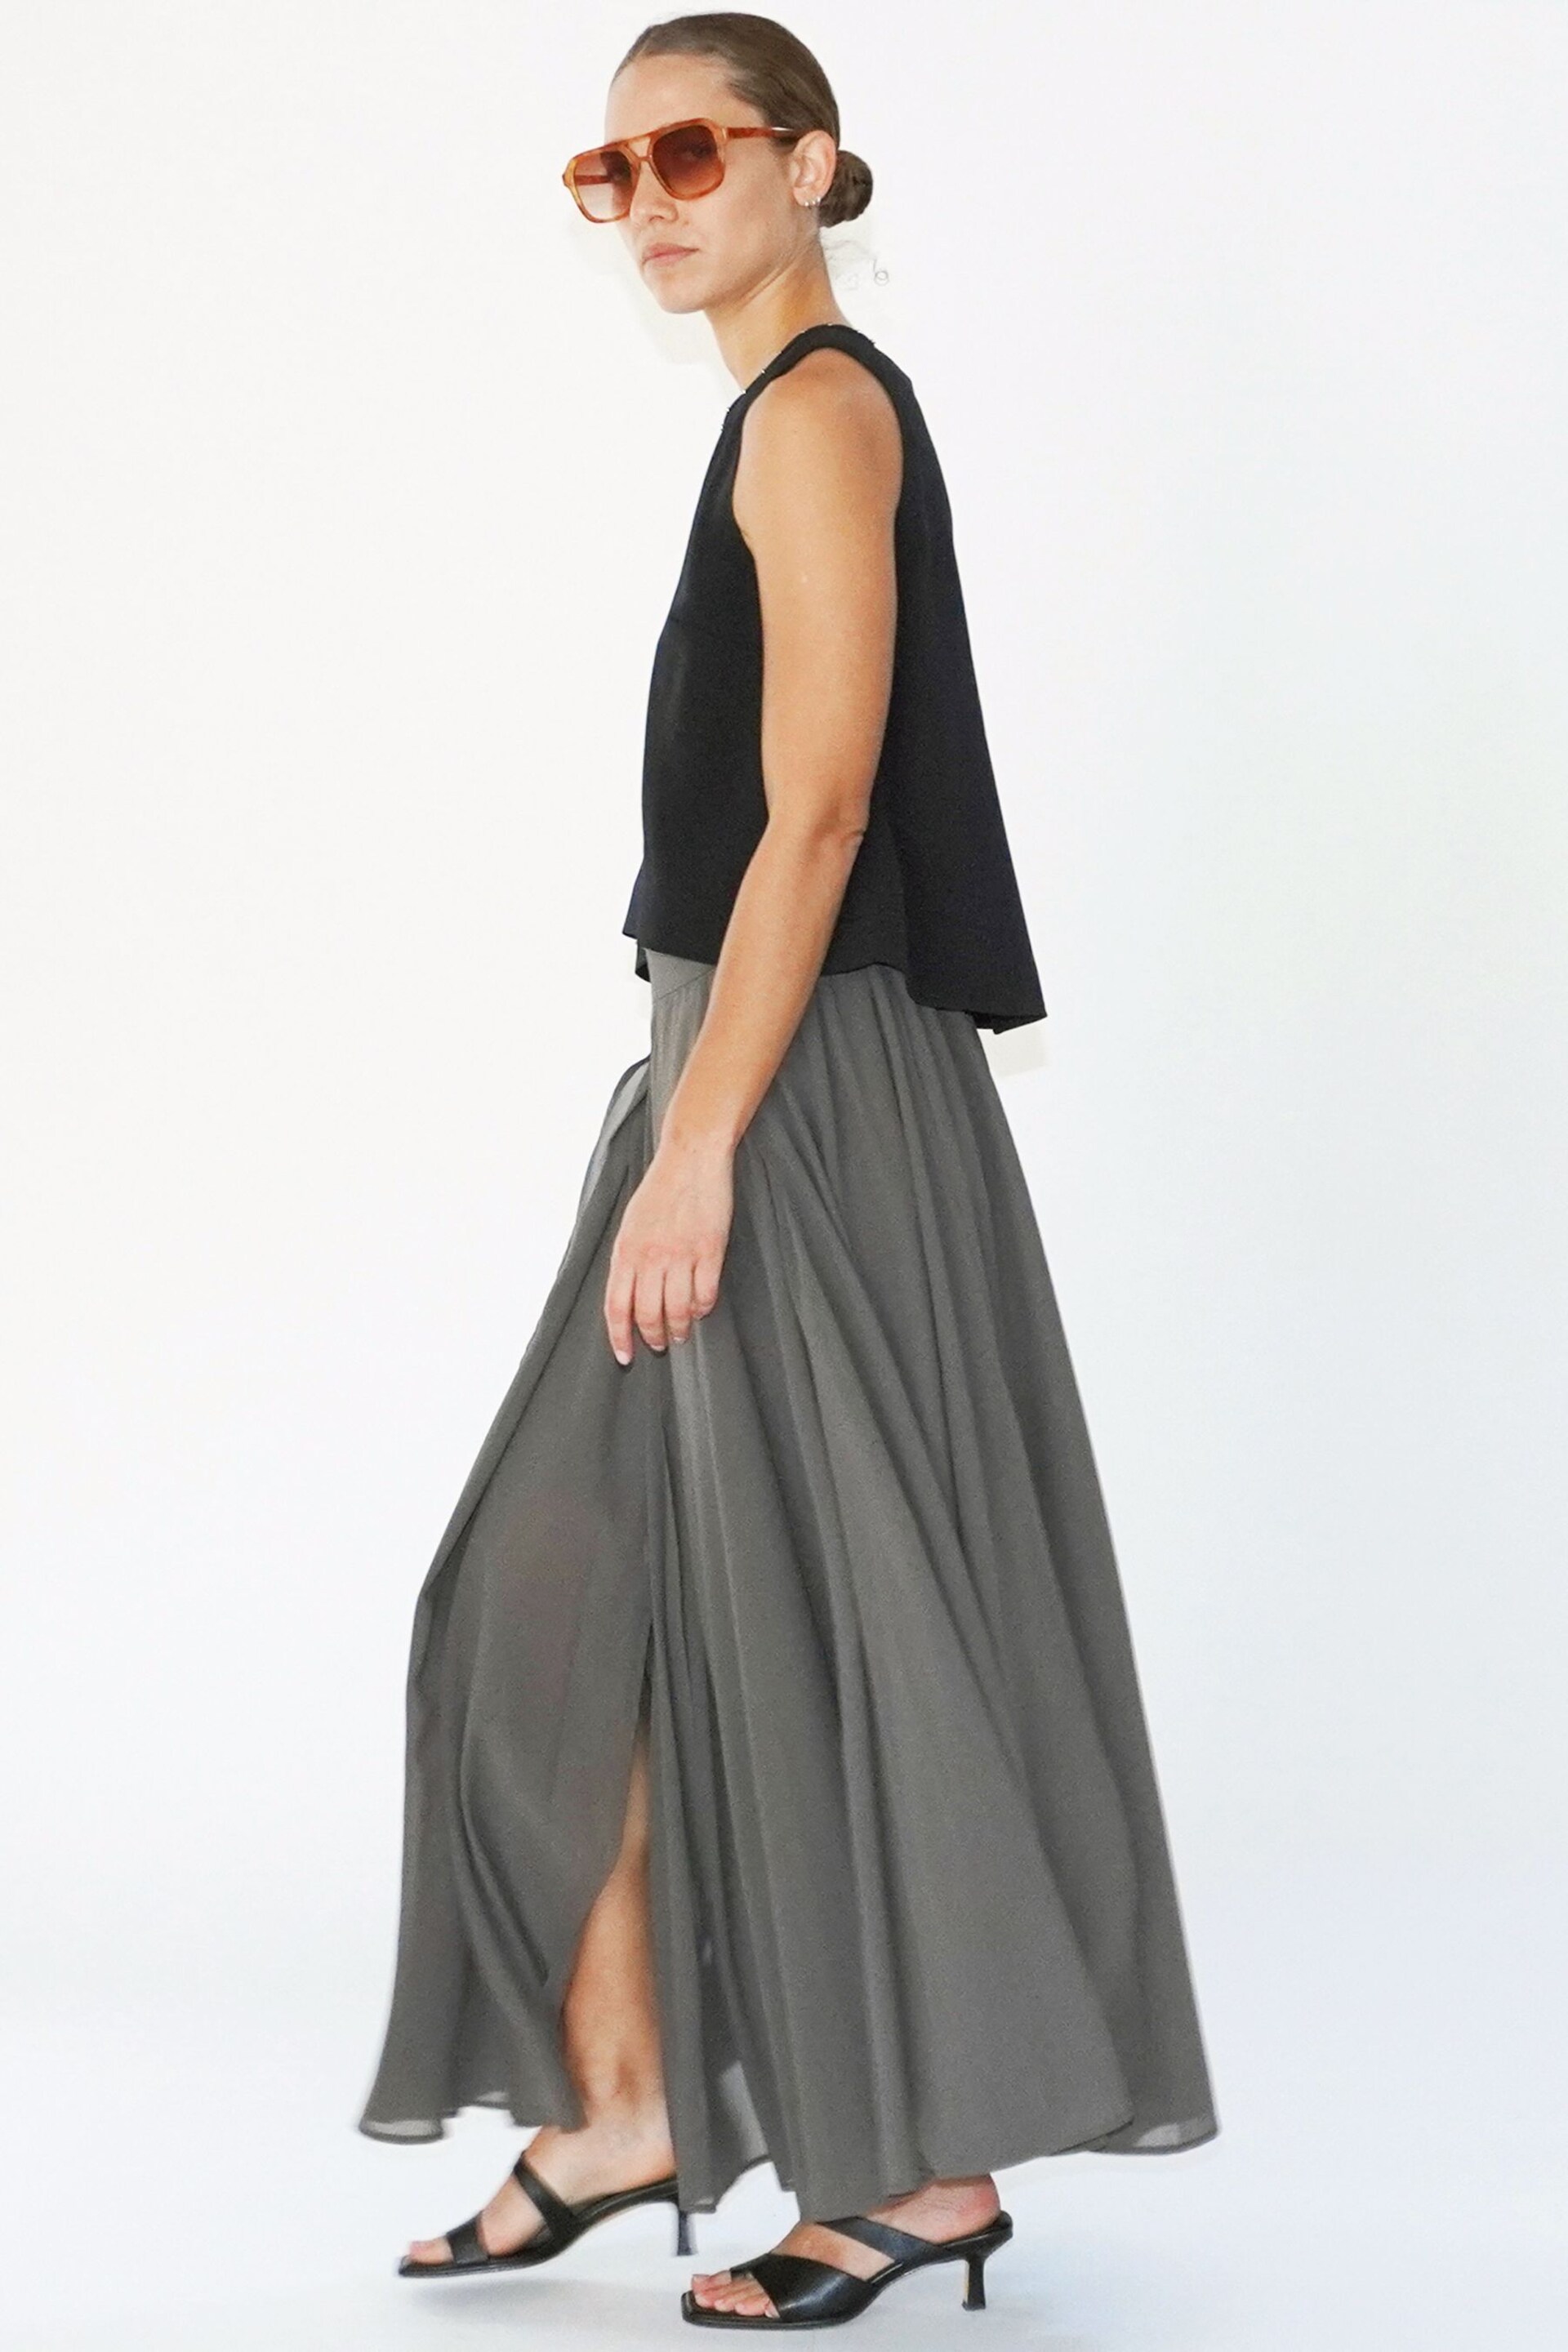 Religion Brown Eligion Floaty Sheer Multi Layered Olsen Maxi Skirt - Image 6 of 6